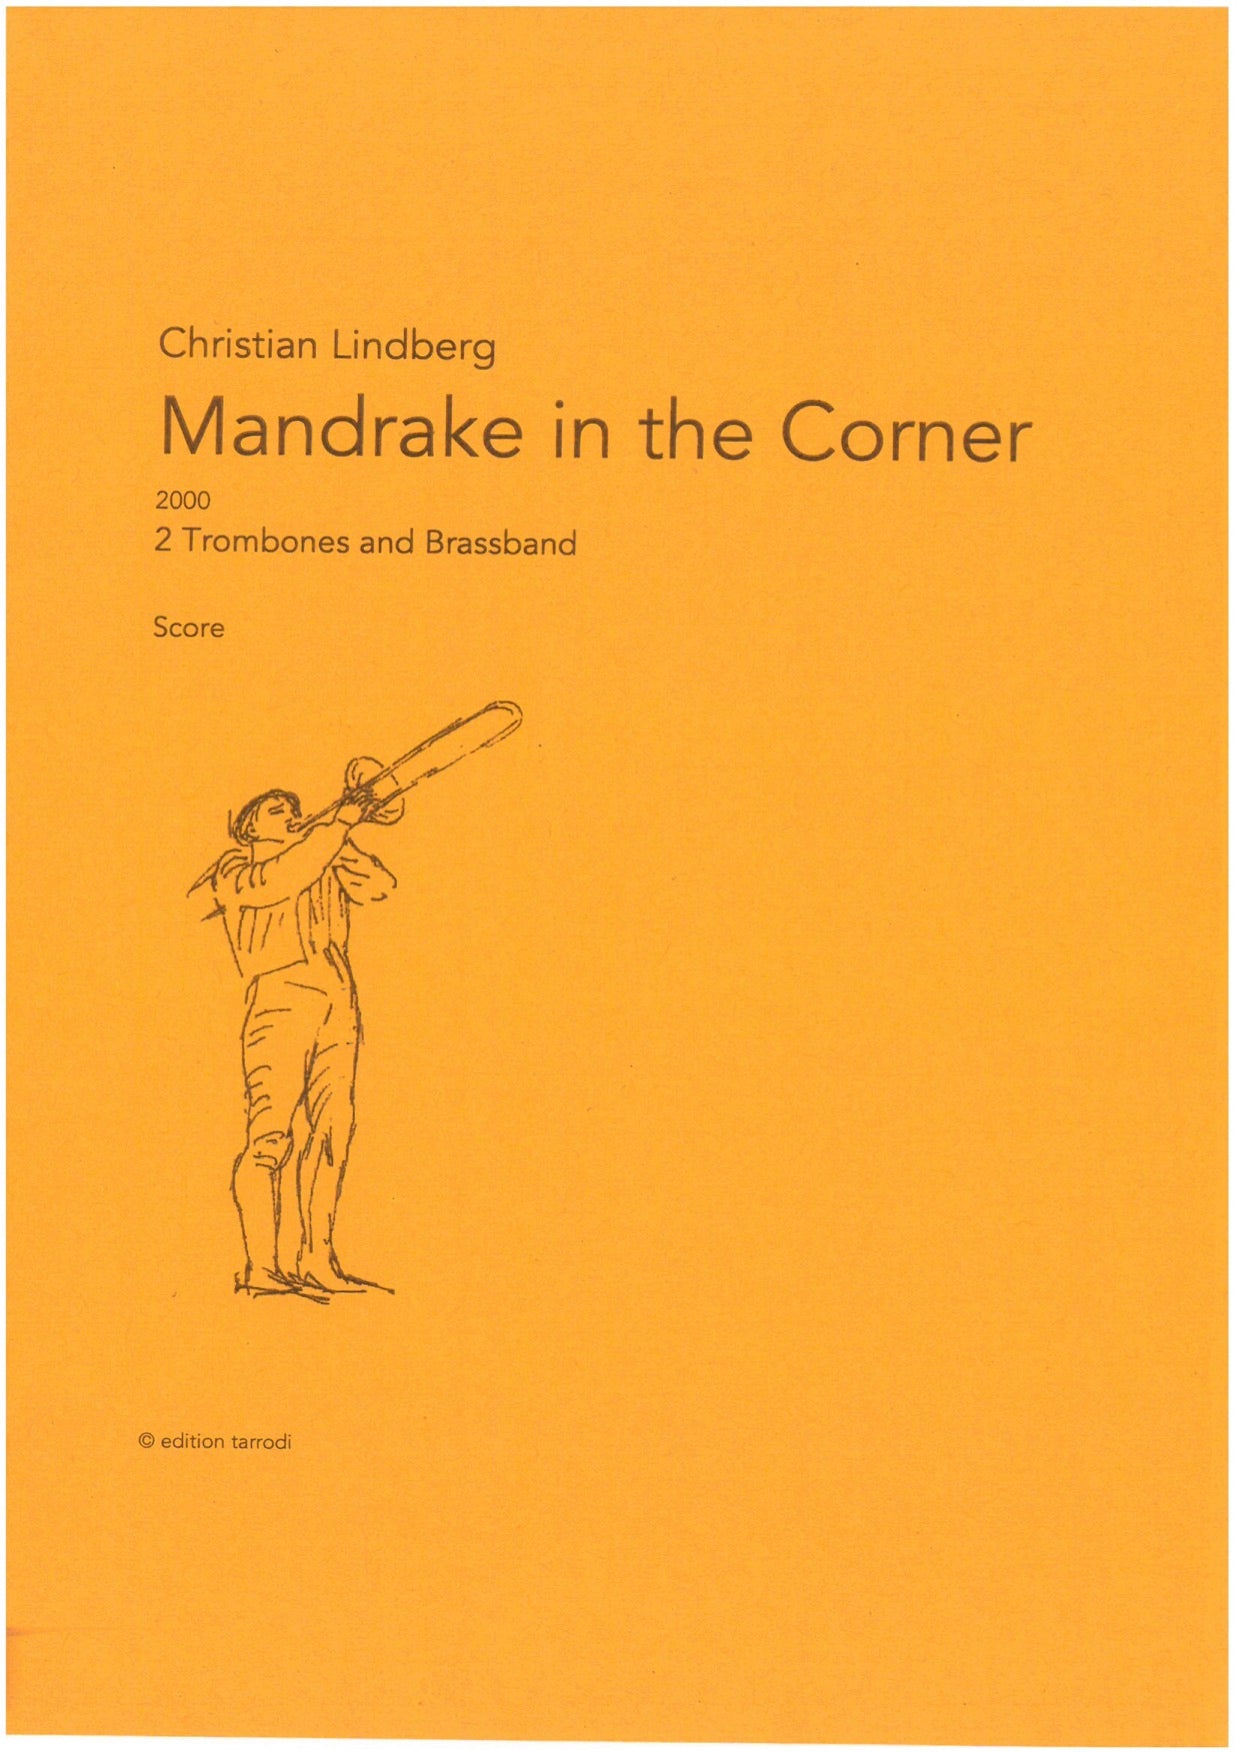 Christian Lindberg - Mandrake in the Corner, 2 Trombones & Brassband